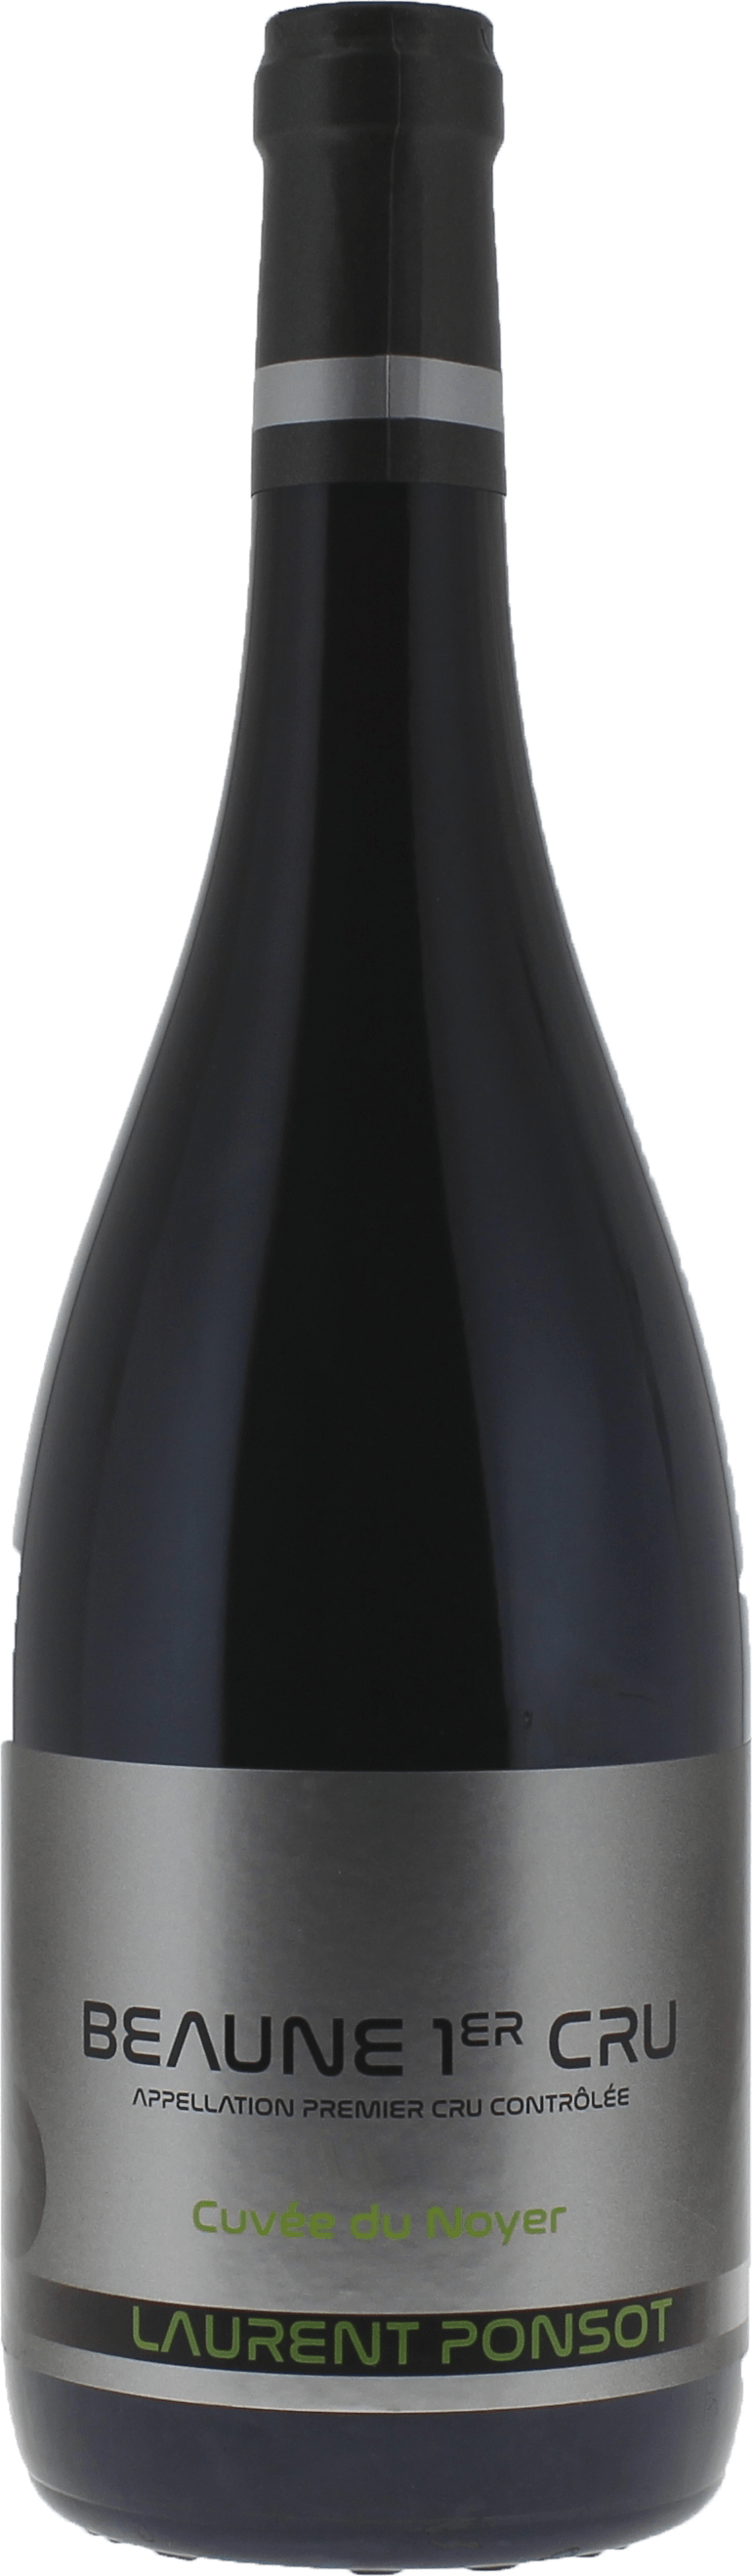 Beaune 1er cru cuve du noyer 2017  Laurent PONSOT, Bourgogne rouge